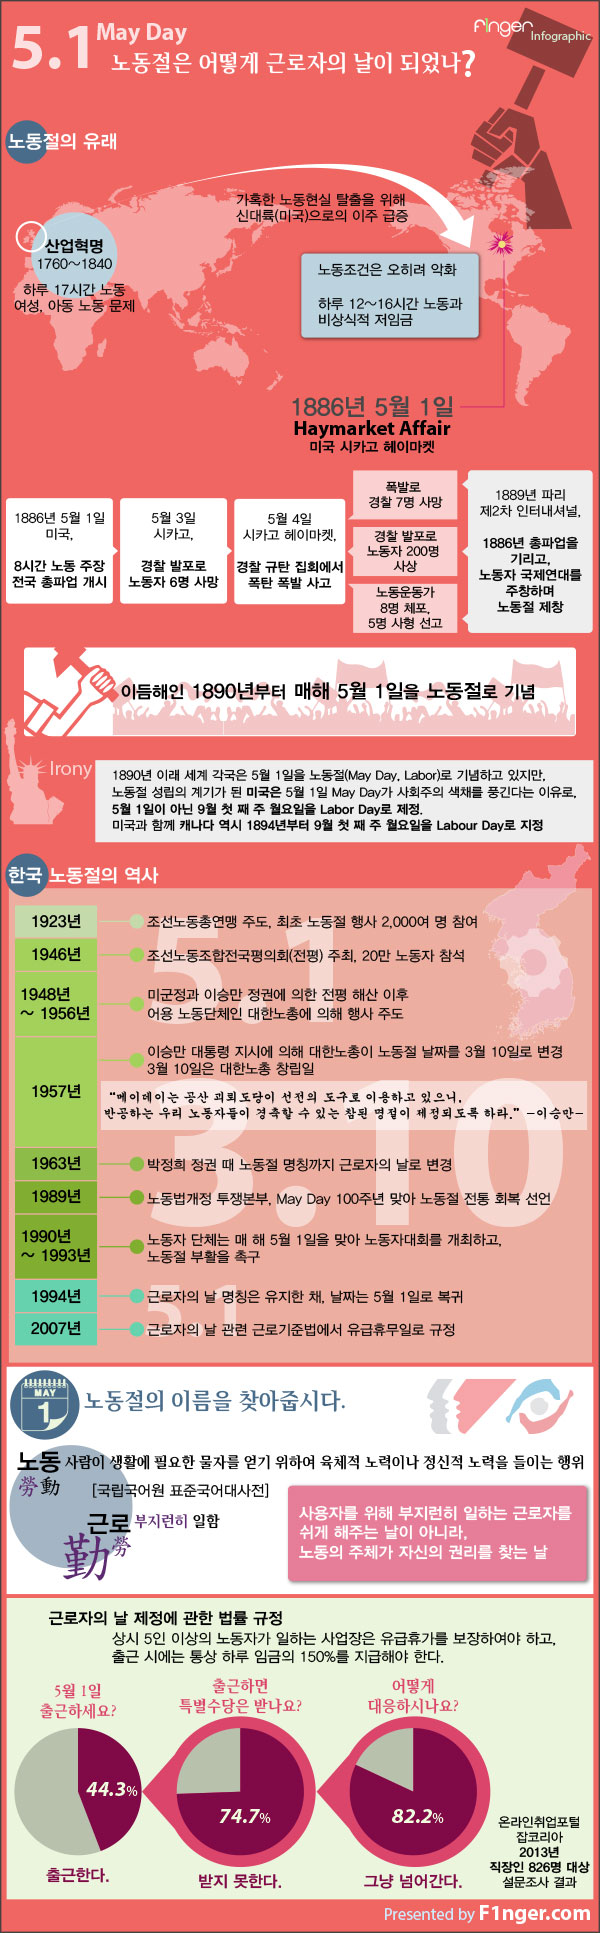 노동절의 유래와 한국의 노동절 역사를 정리한 인포그래픽입니다.